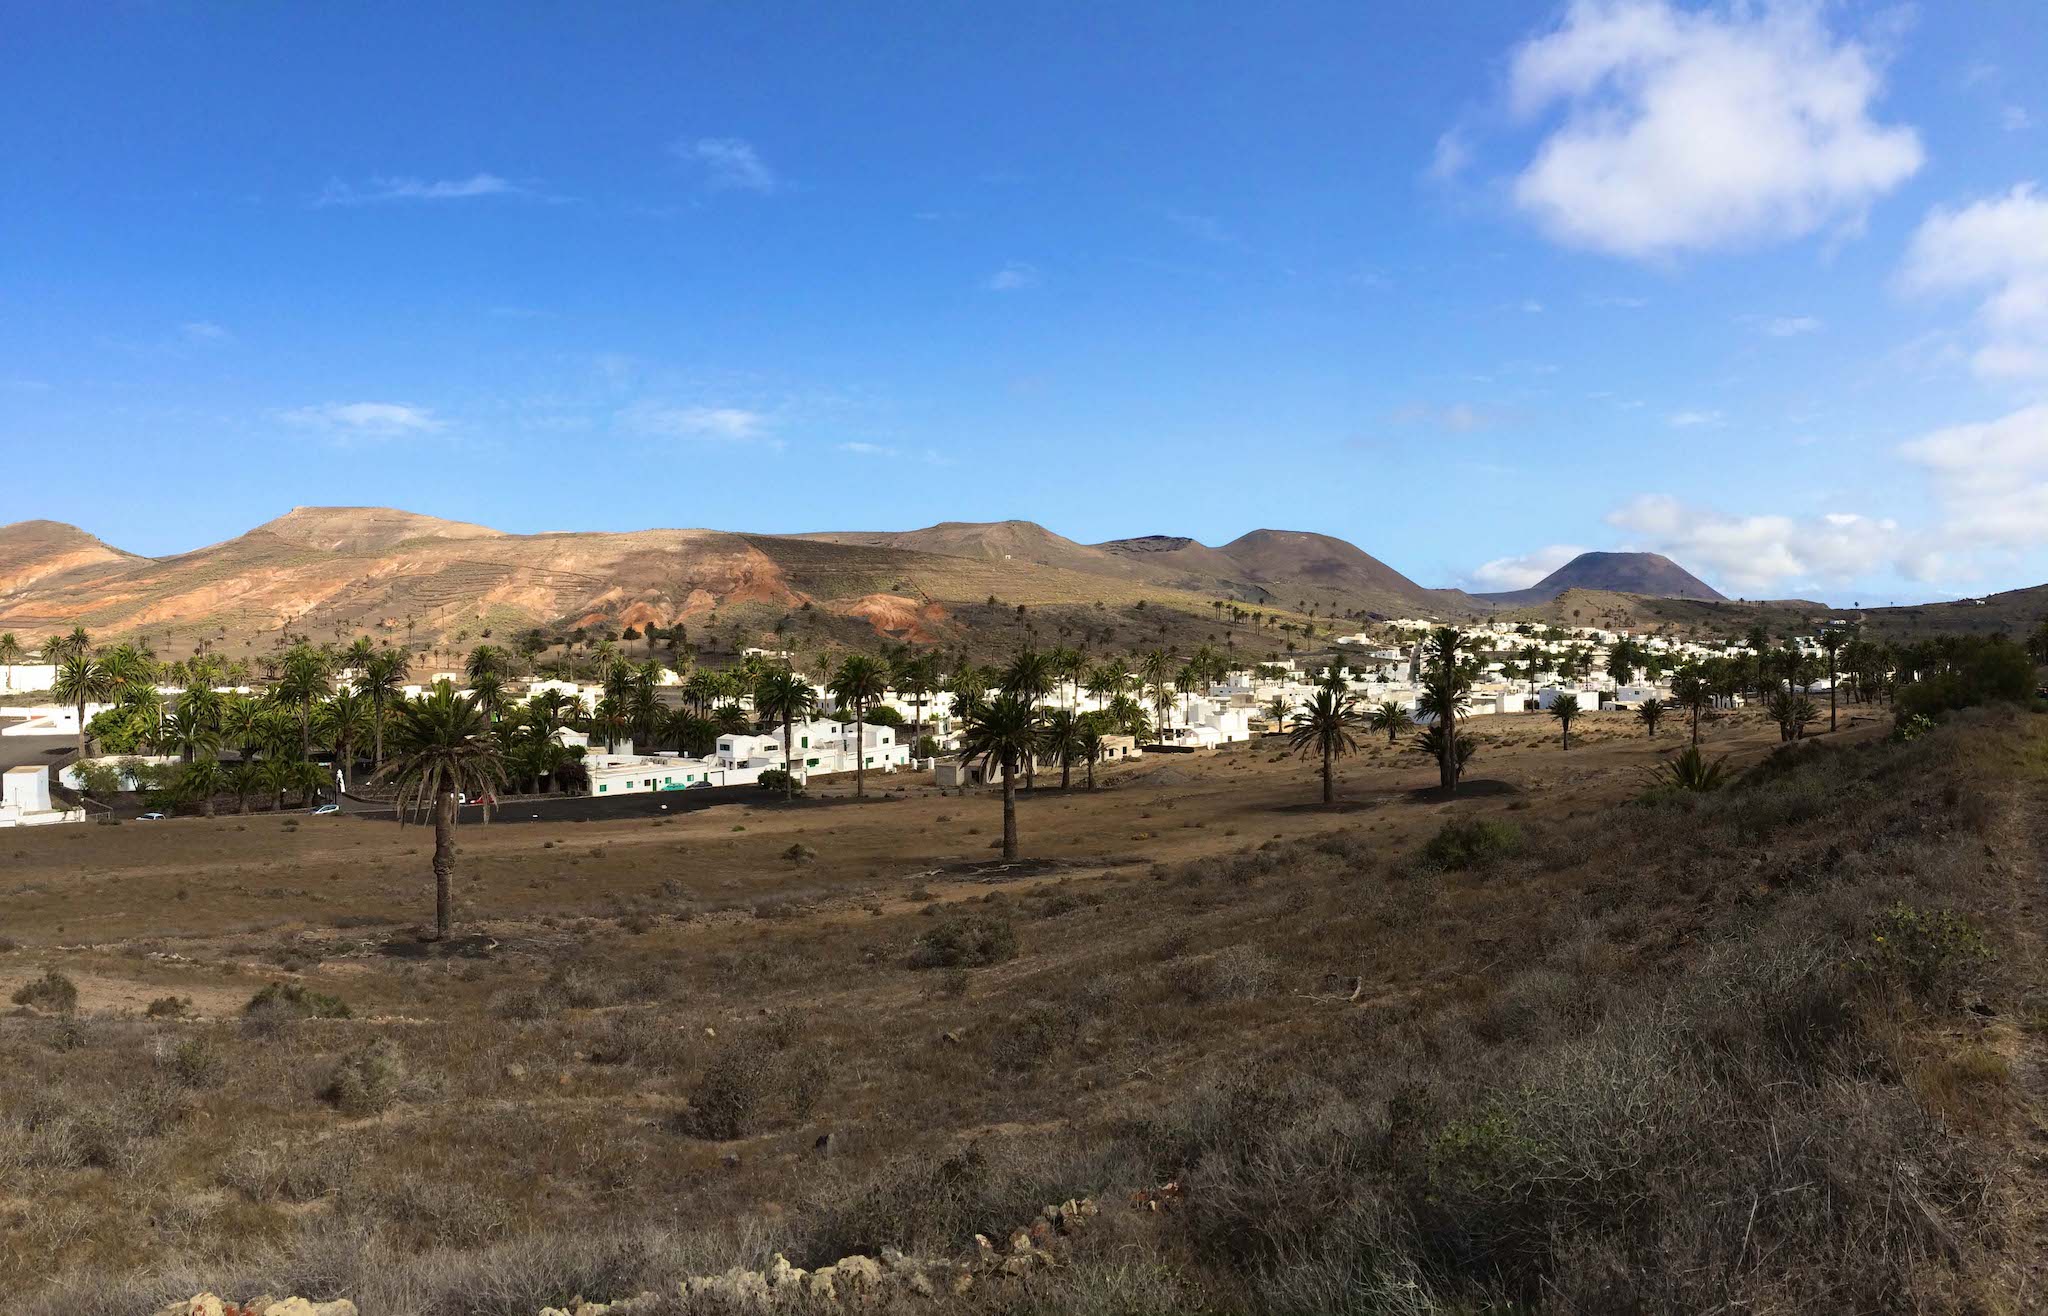 Vallée des 1000 palmiers : Dans la petite ville de Haria à Lanzarote, un nombre incroyable de palmiers poussent en contraste avec le paysage par ailleurs plutôt aride. Photo : Sascha Tegtmeyer